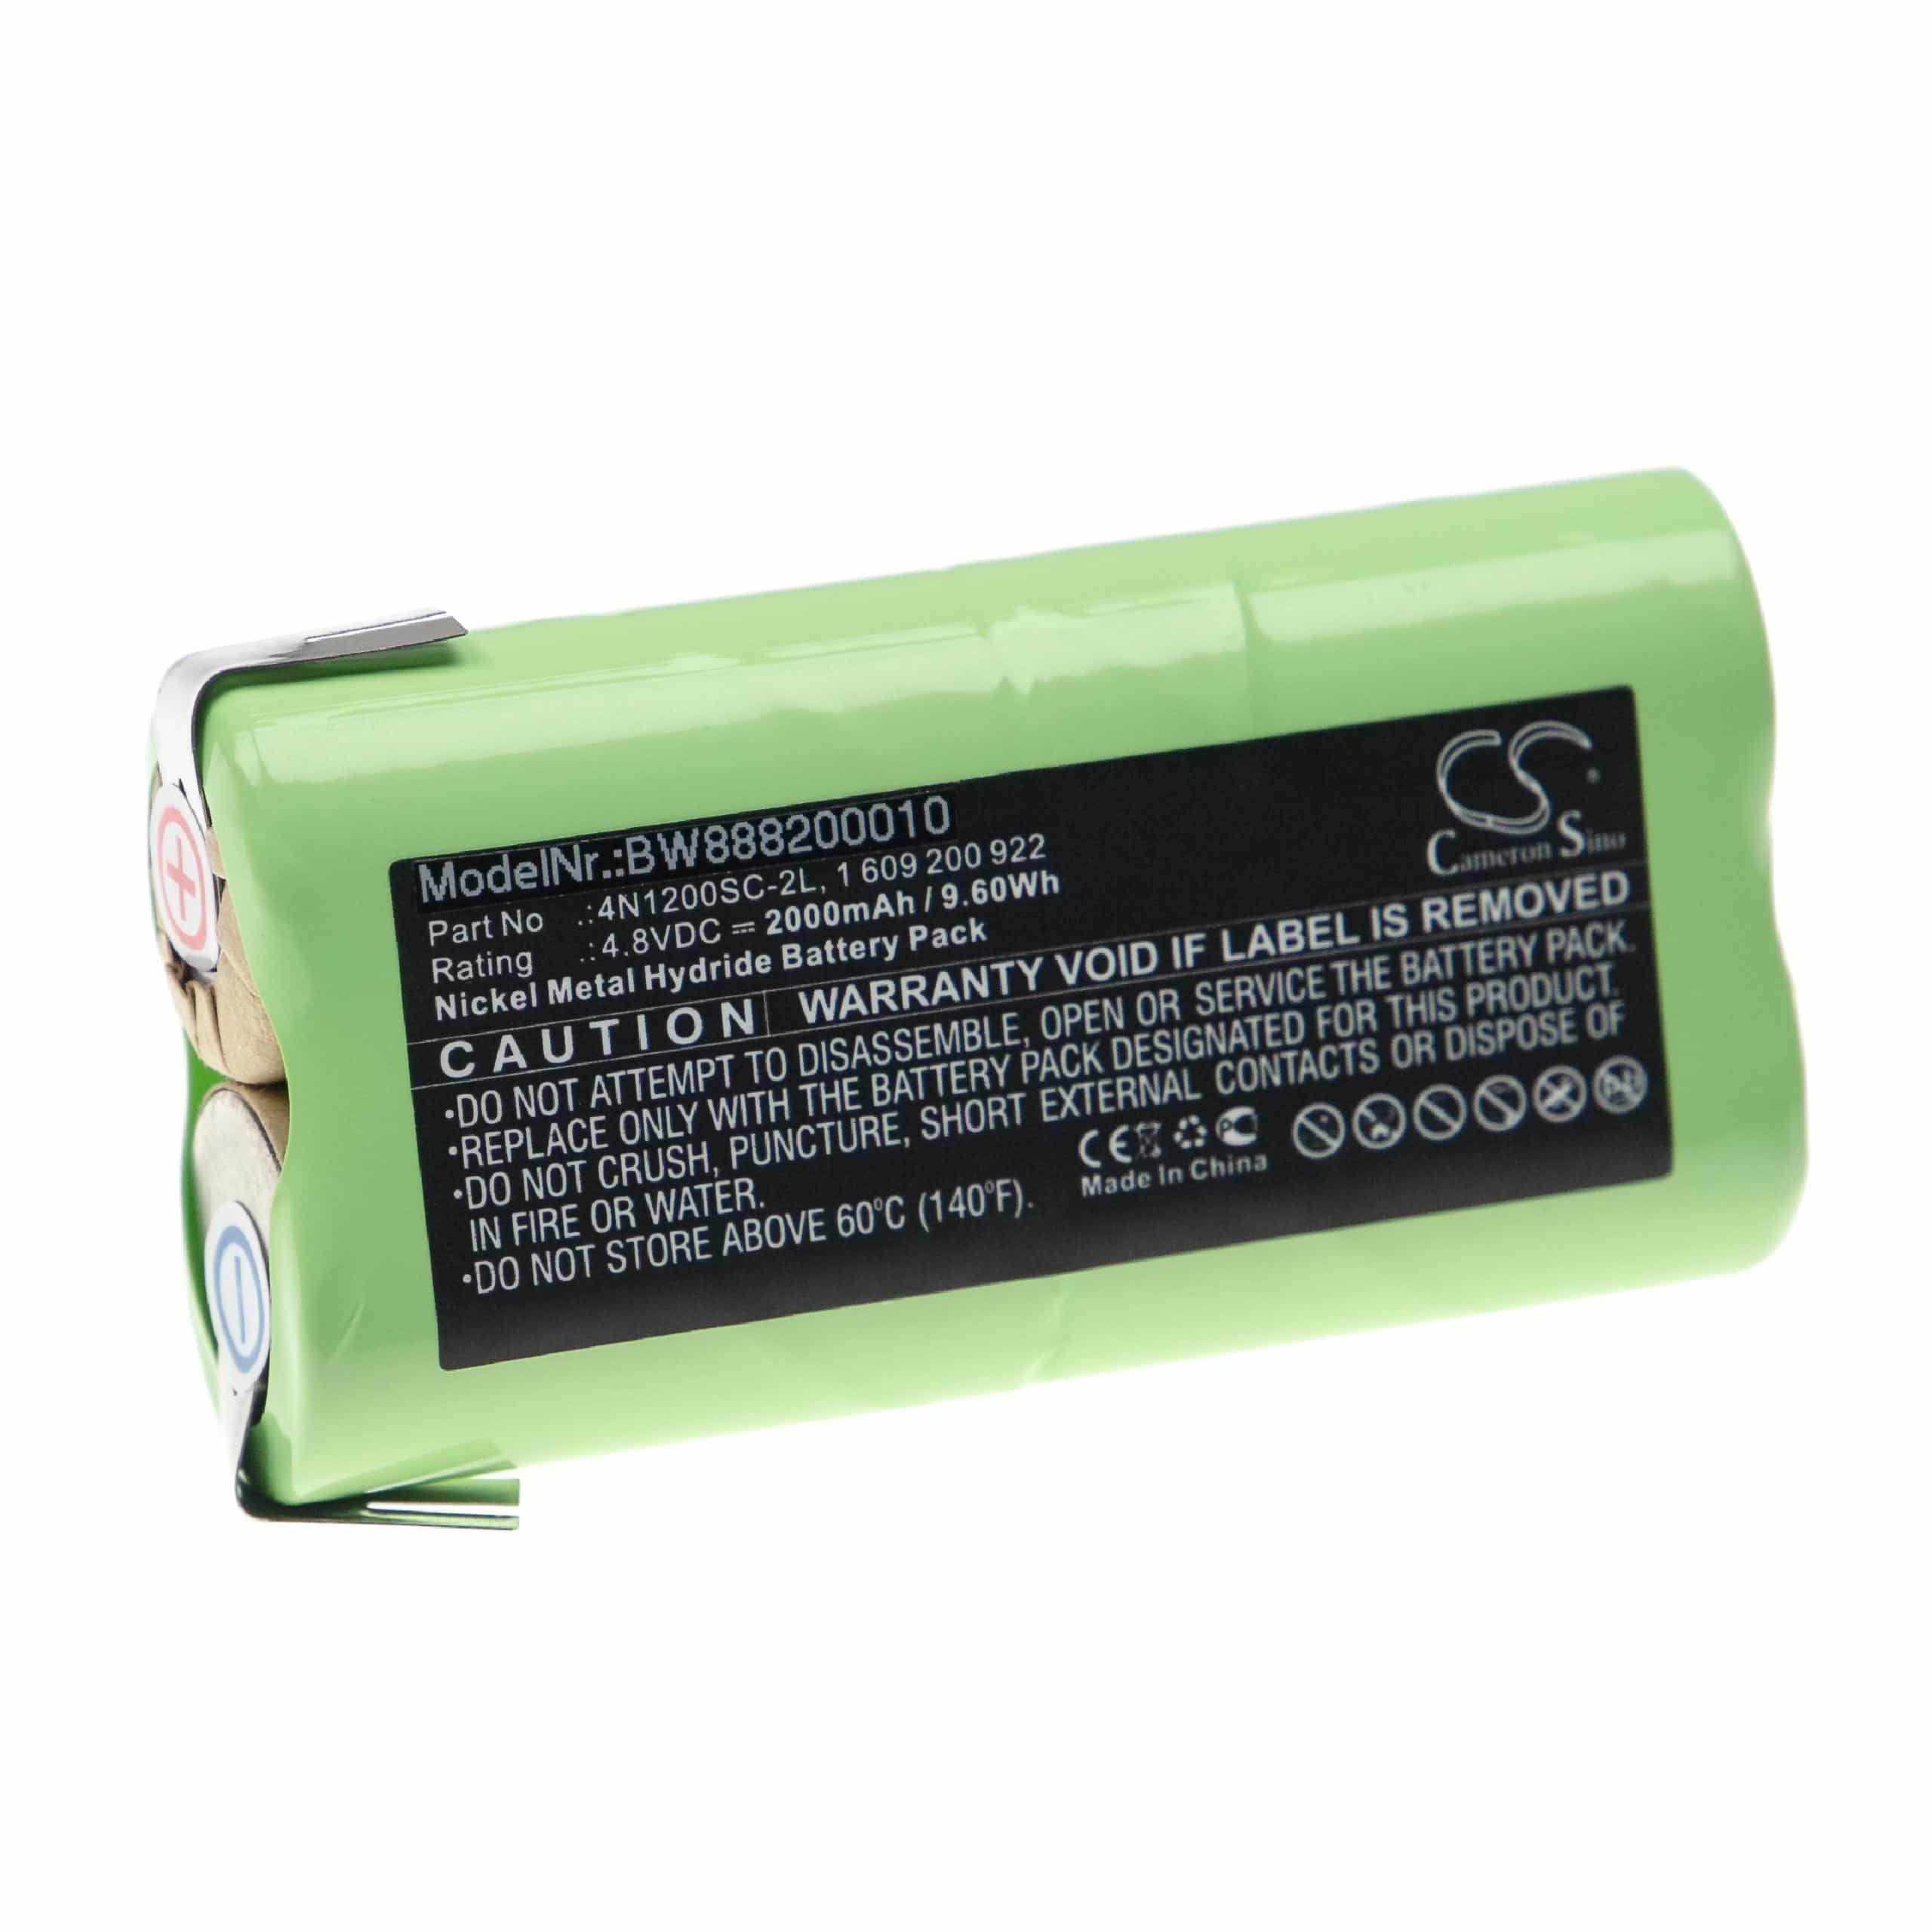 Batería reemplaza Bosch 1 609 200 922, 1 609 390 002, 4N1200SC-2L para herramienta - 2000 mAh, 4,8 V, NiMH